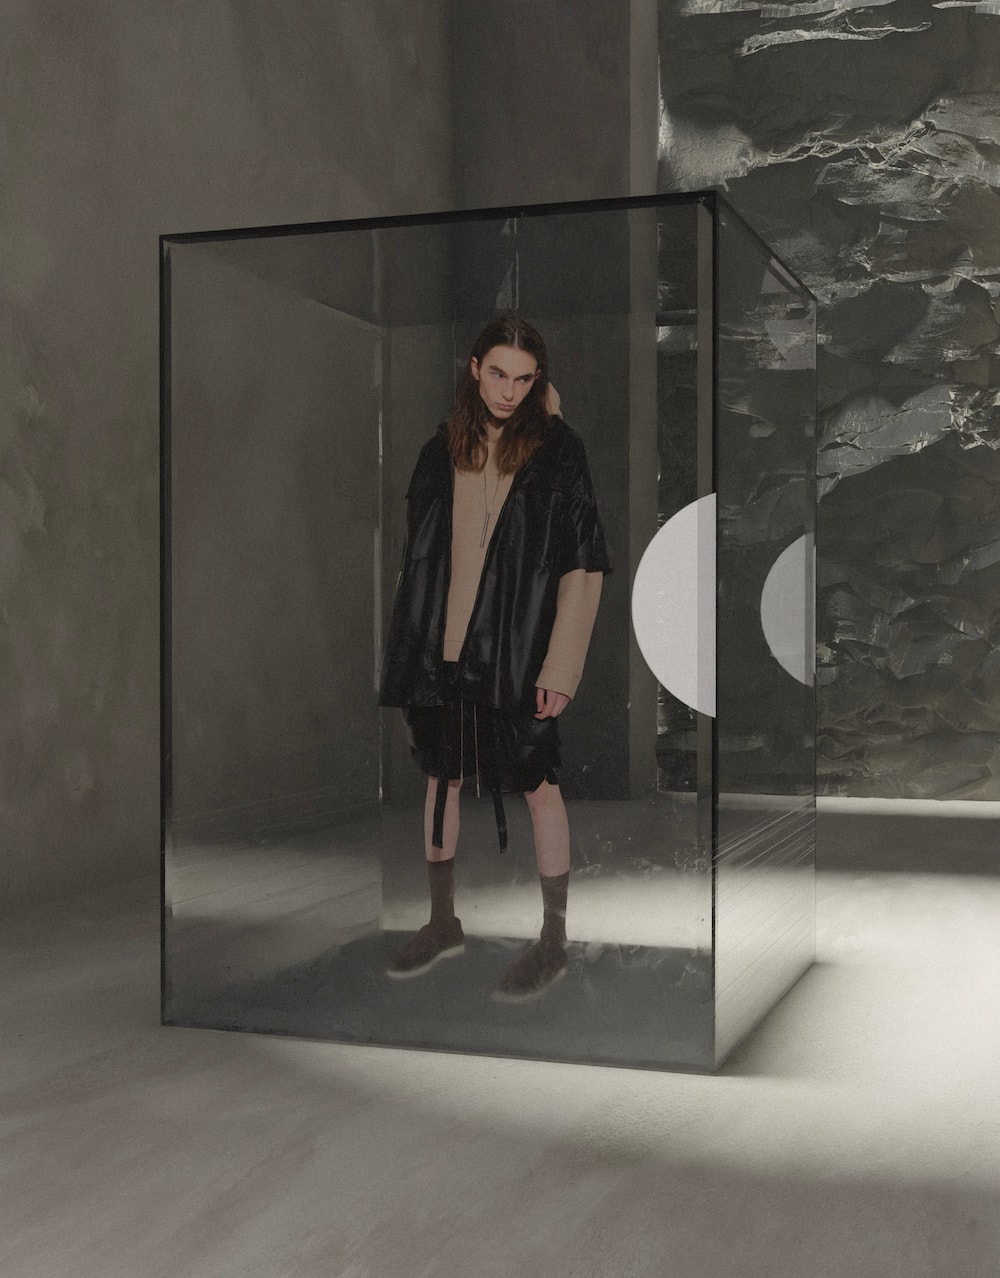 法国时装品牌 ARNODEFRANCE 发布「巨石上的独松」系列 